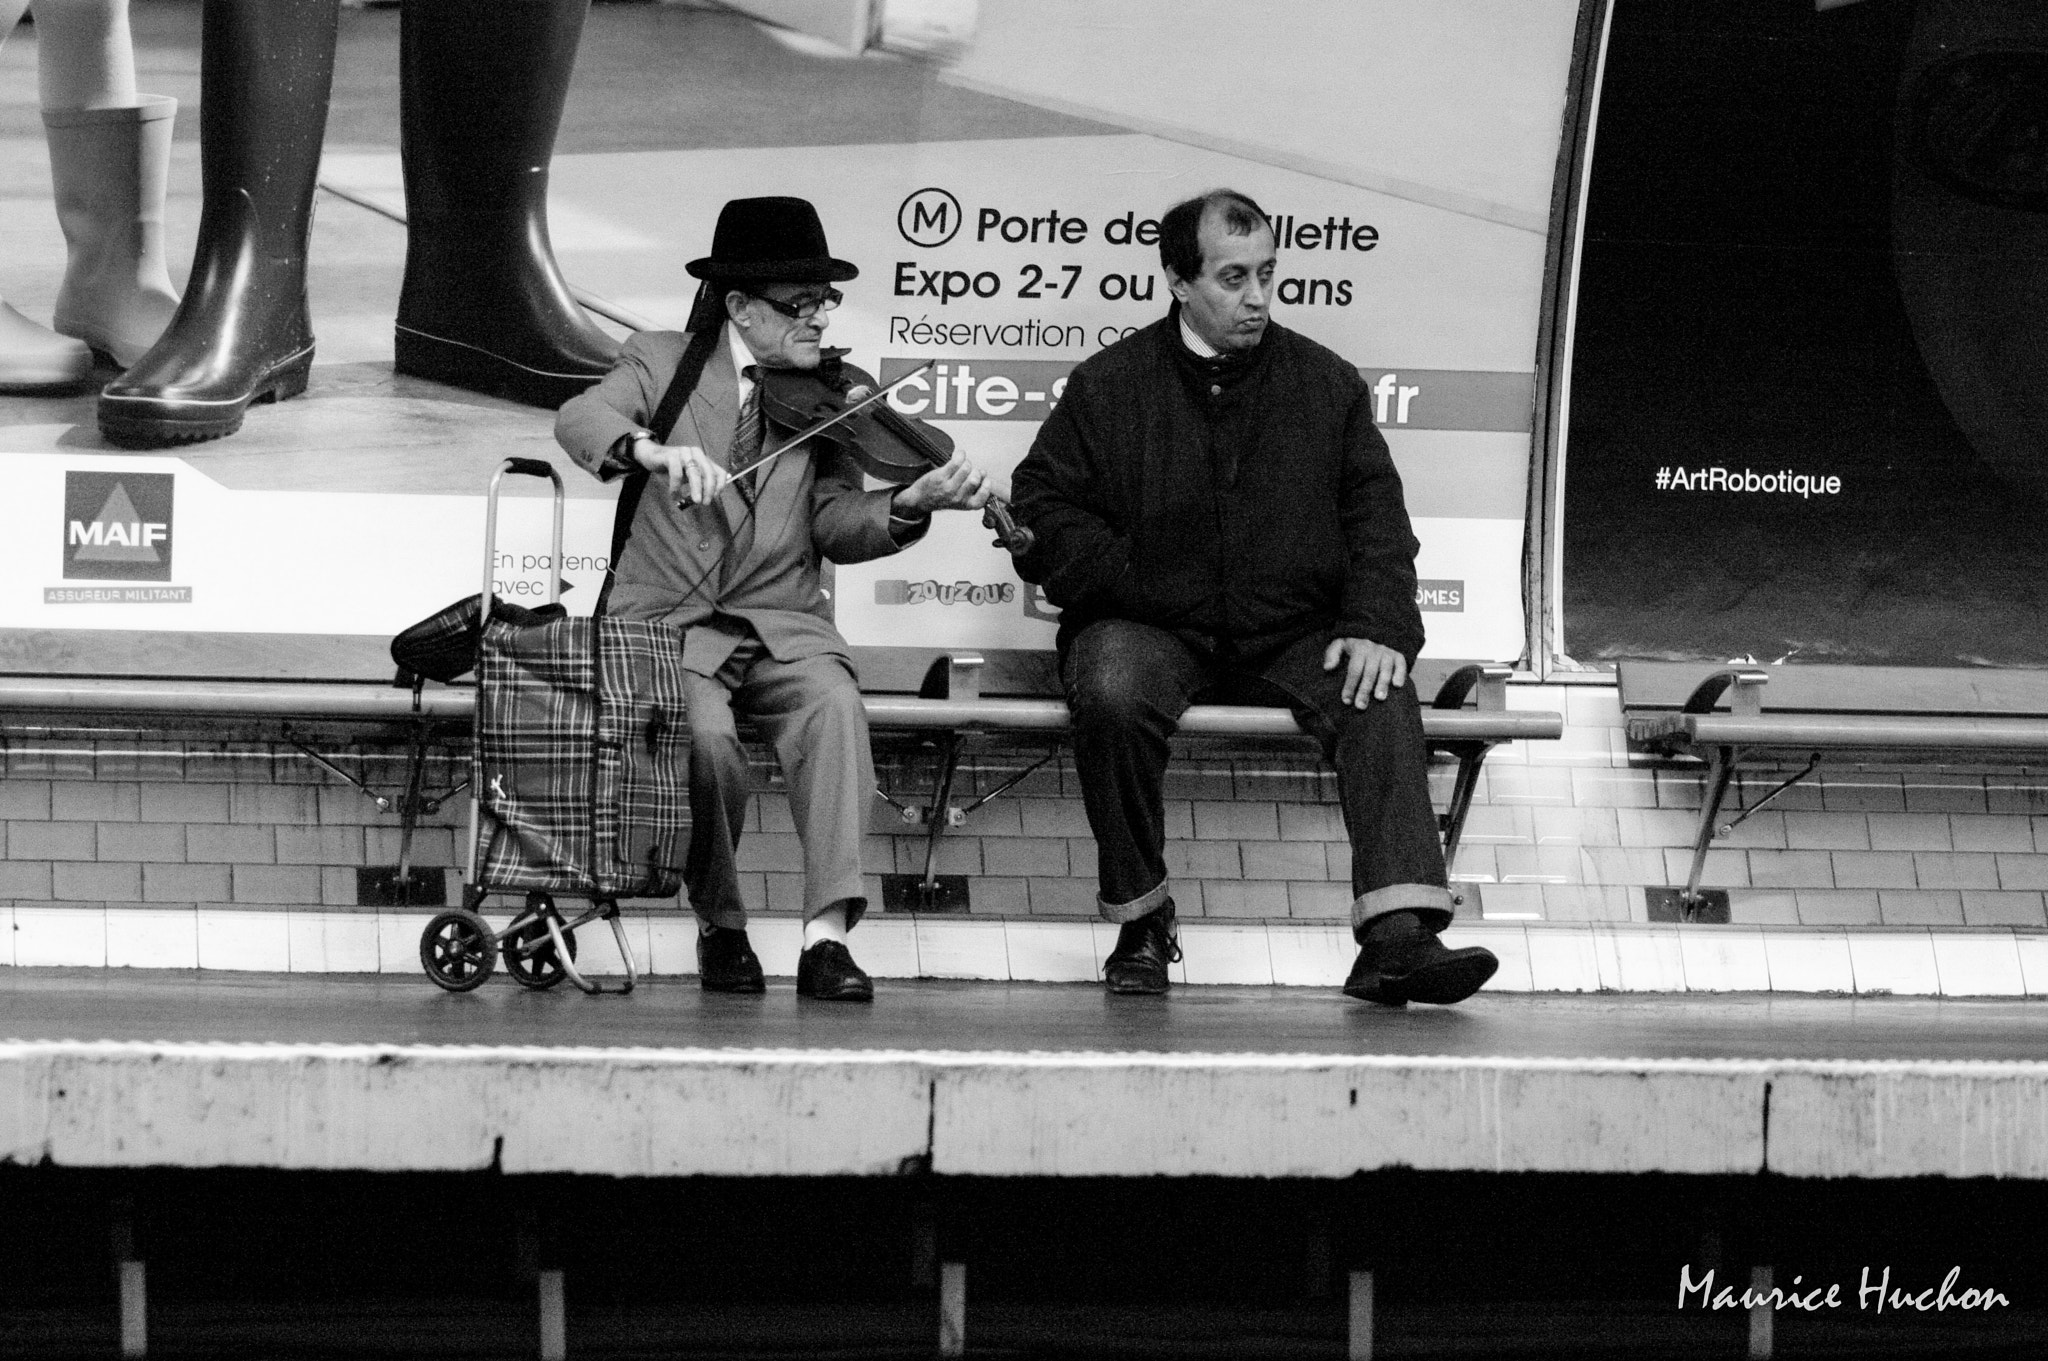 Pentax K20D sample photo. Violoniste metro parisien photography